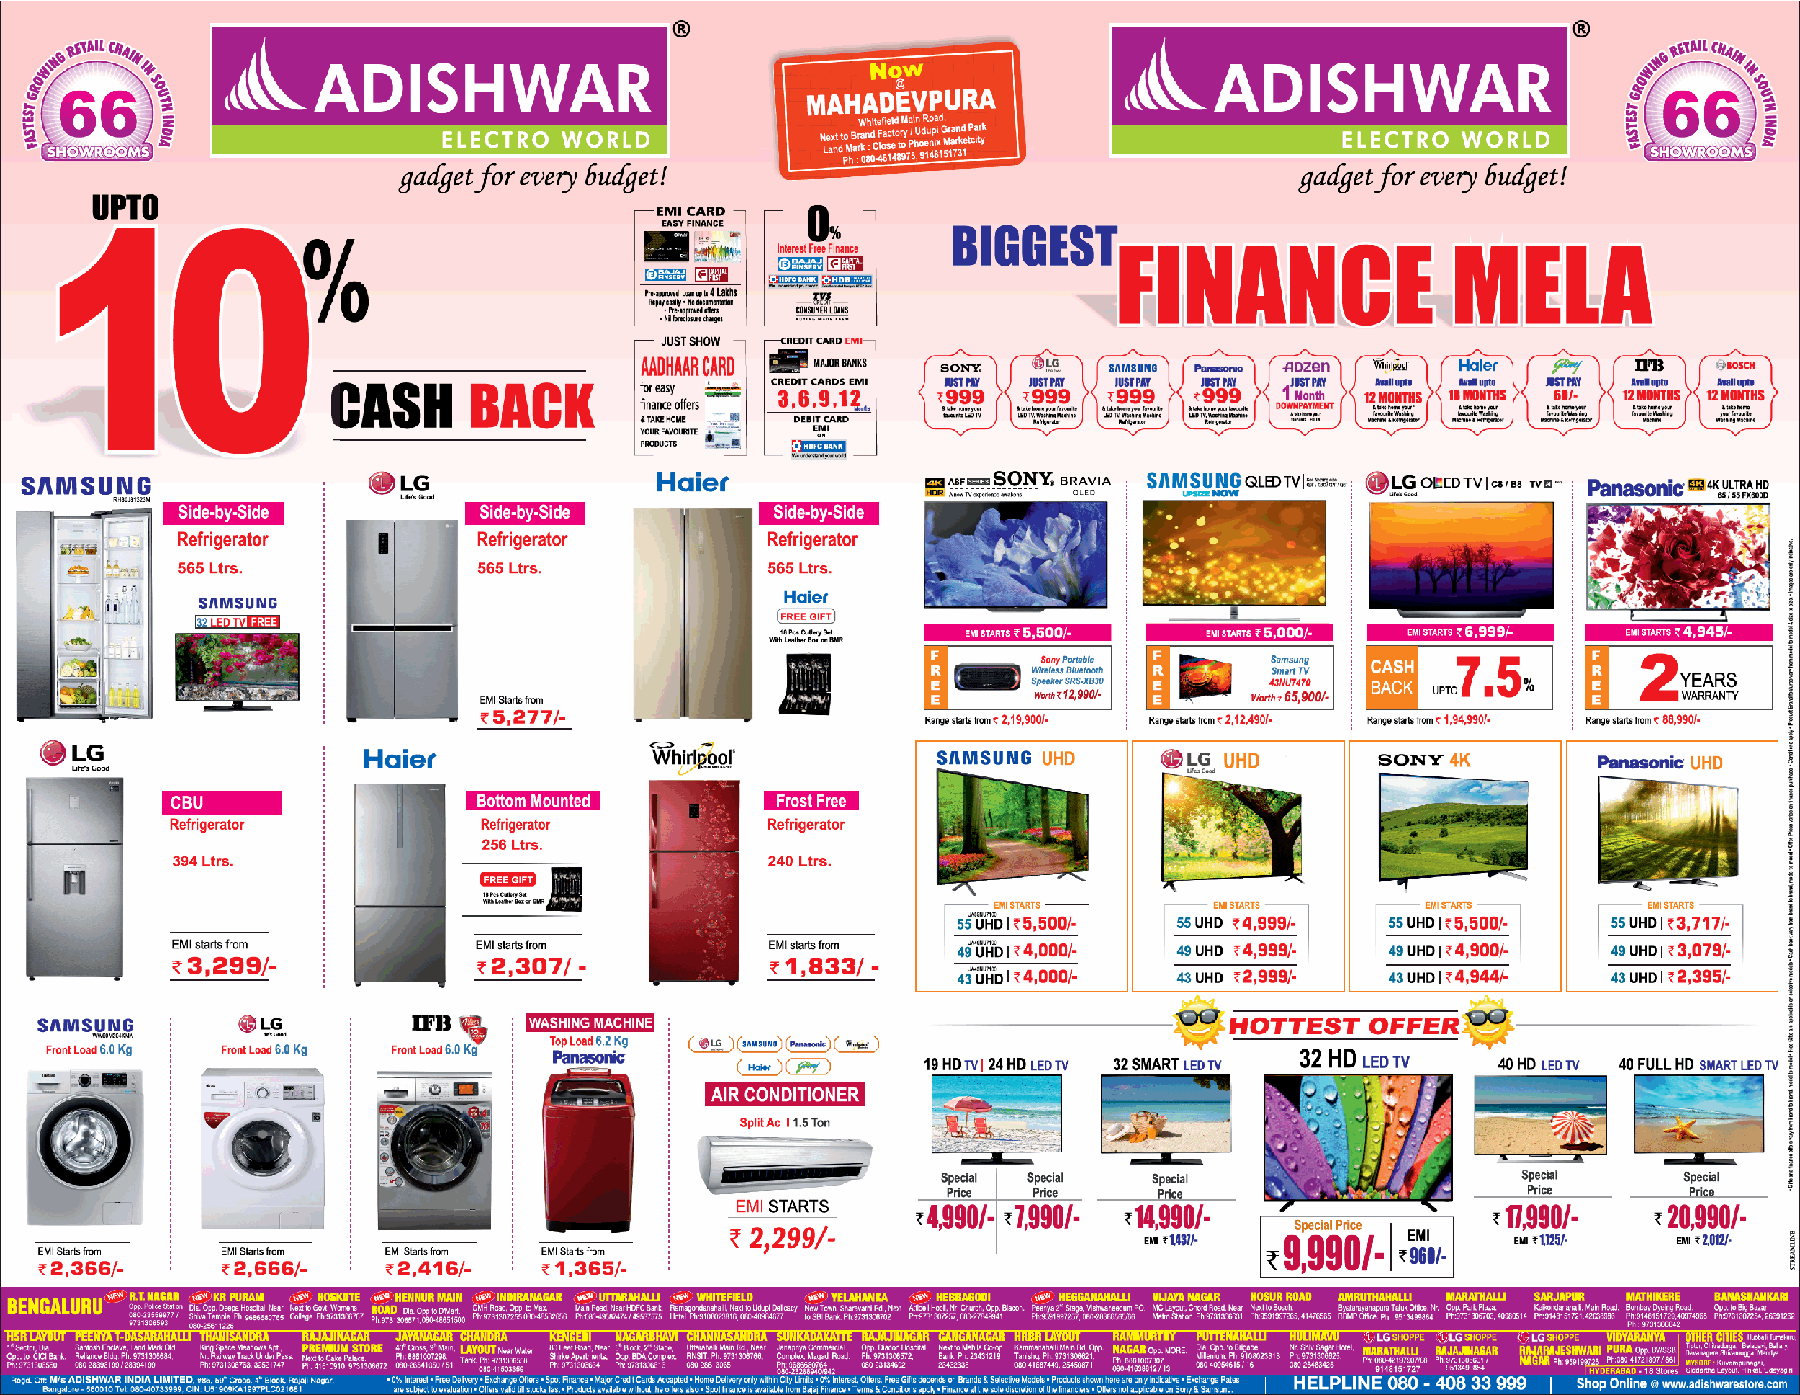 adishwar-biggest-finance-mela-upto-10%-cashback-ad-bangalore-times-16-02-2019.png